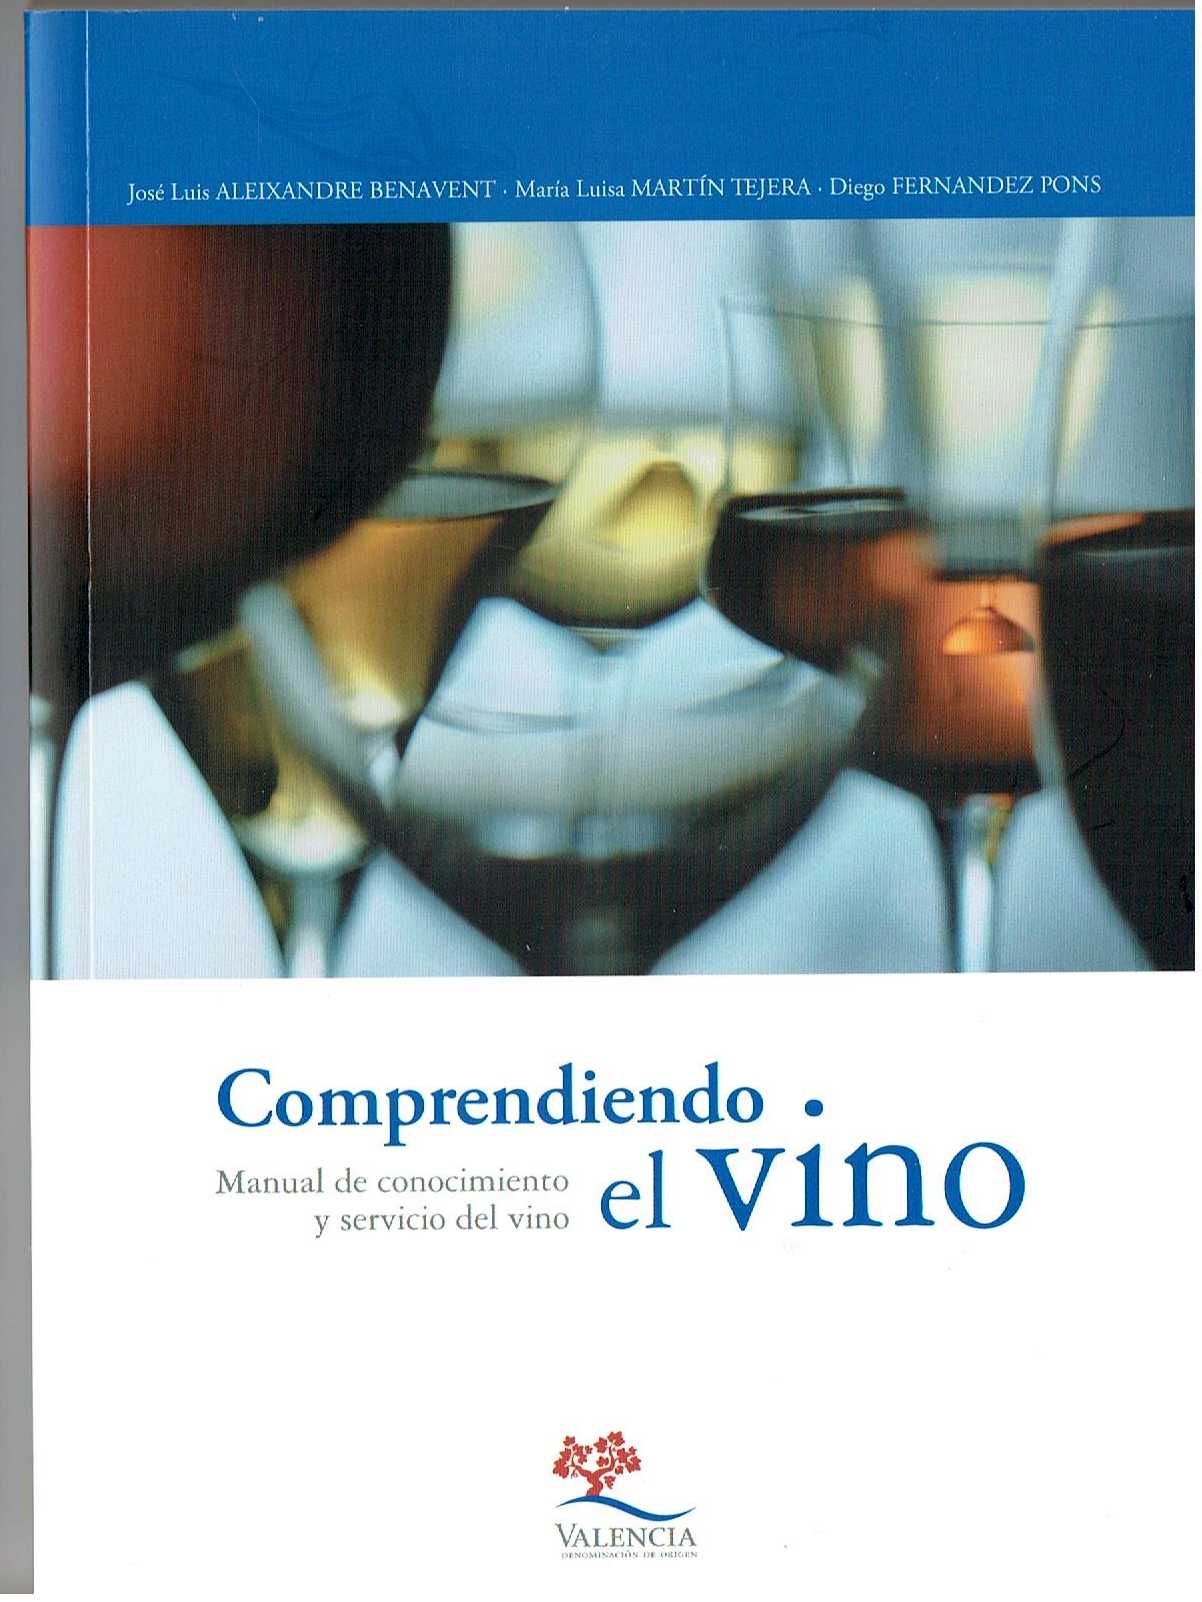 do-valencia-1610-master-vino-valenciano-02